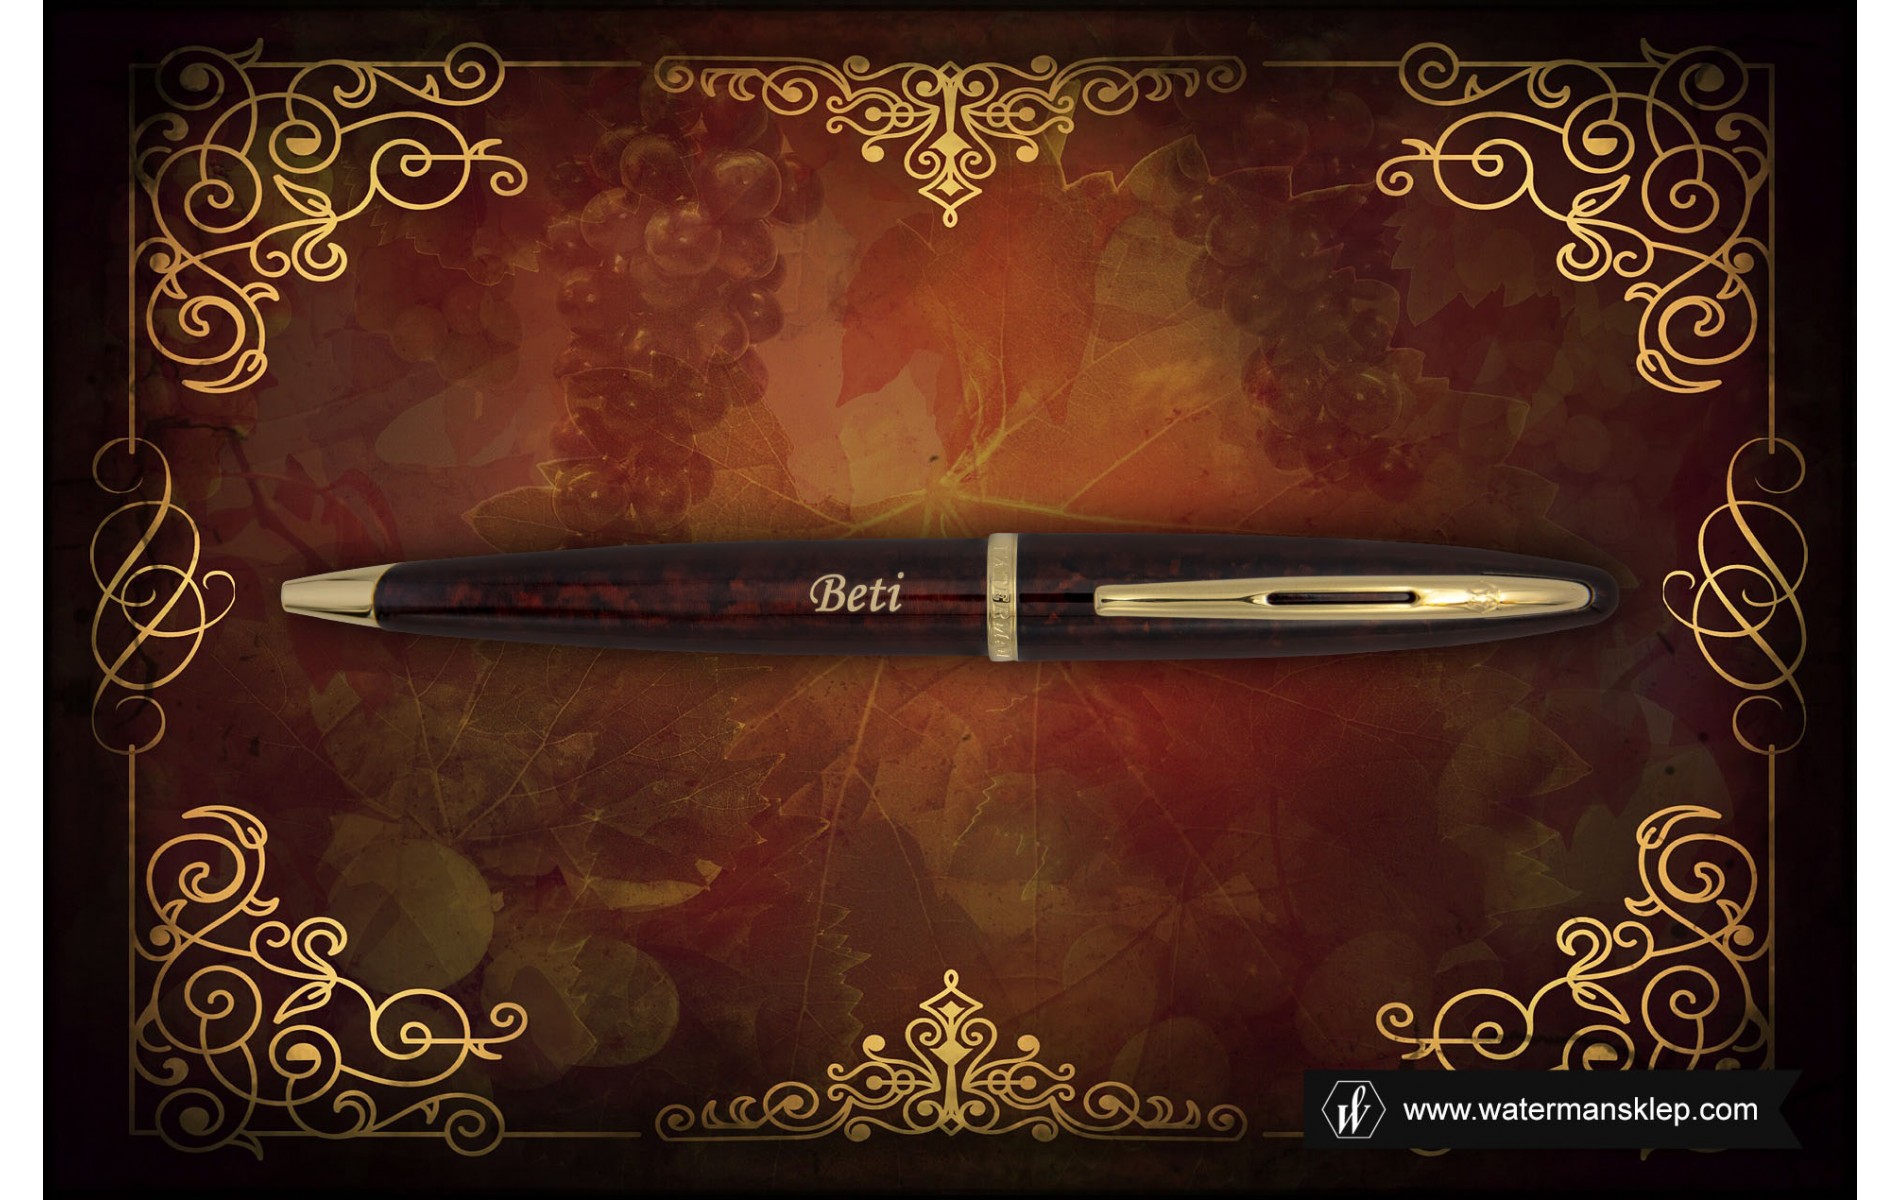  Długopis Waterman Carene bursztyn GT [S0700940] z grawerem BETI